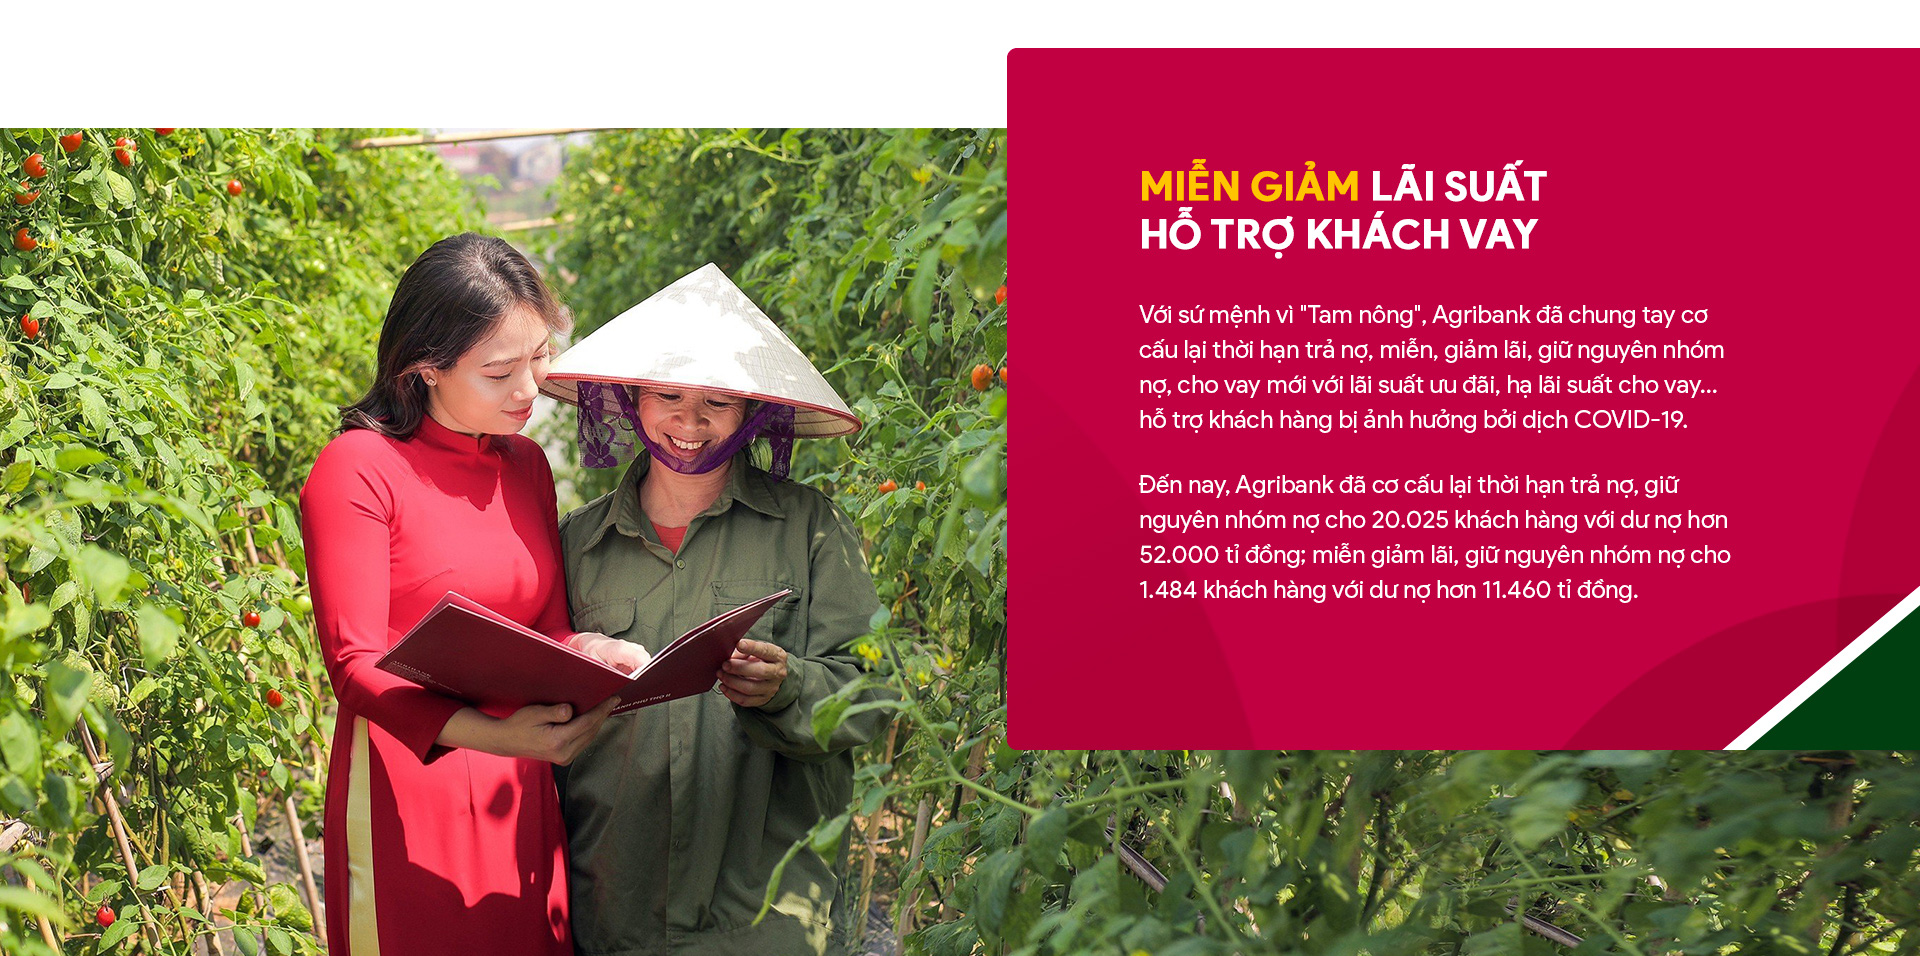 Agribank - điểm tựa vững chắc cho nền nông nghiệp Việt Nam - Ảnh 10.